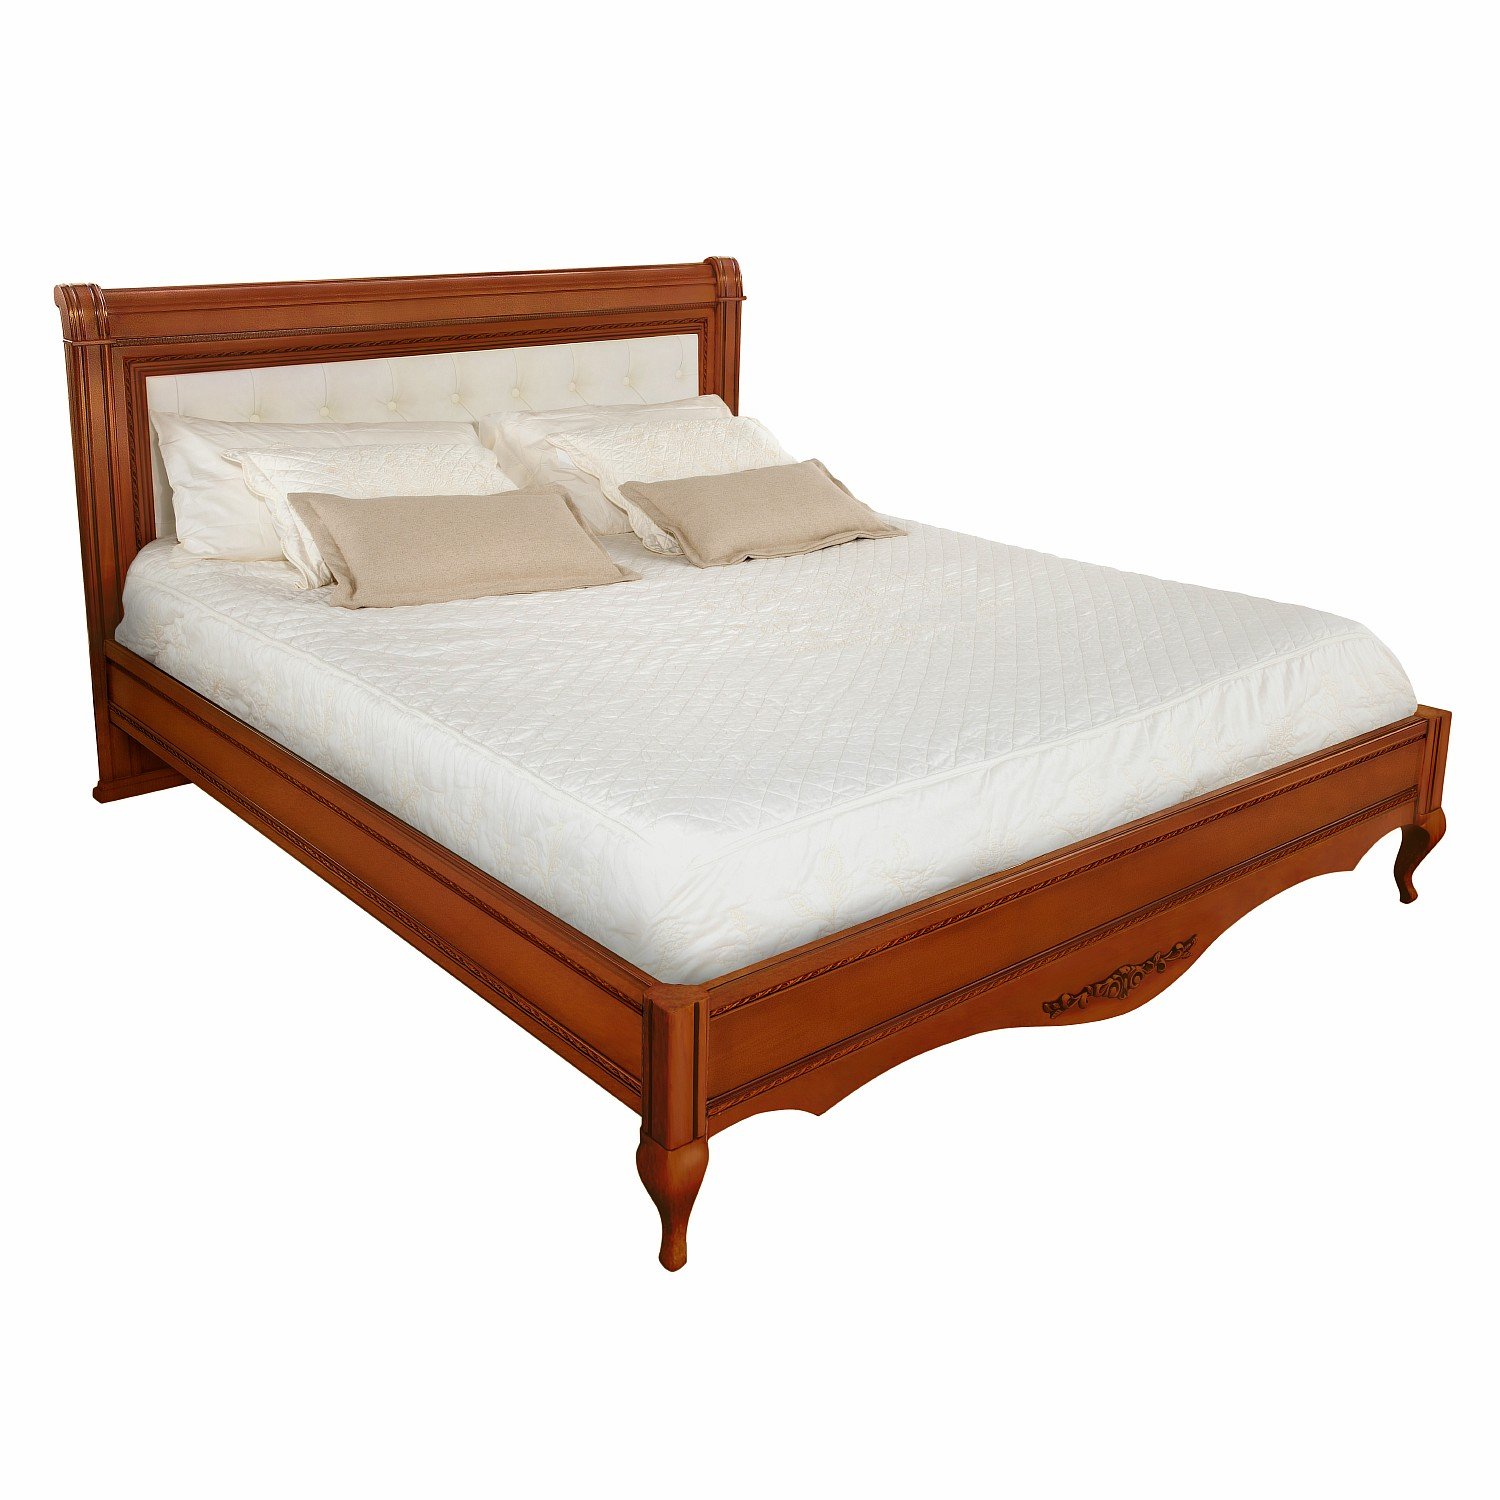 Кровать Timber Неаполь, двуспальная с мягким изголовьем 180x200 см цвет: янтарь (T-528)T-528